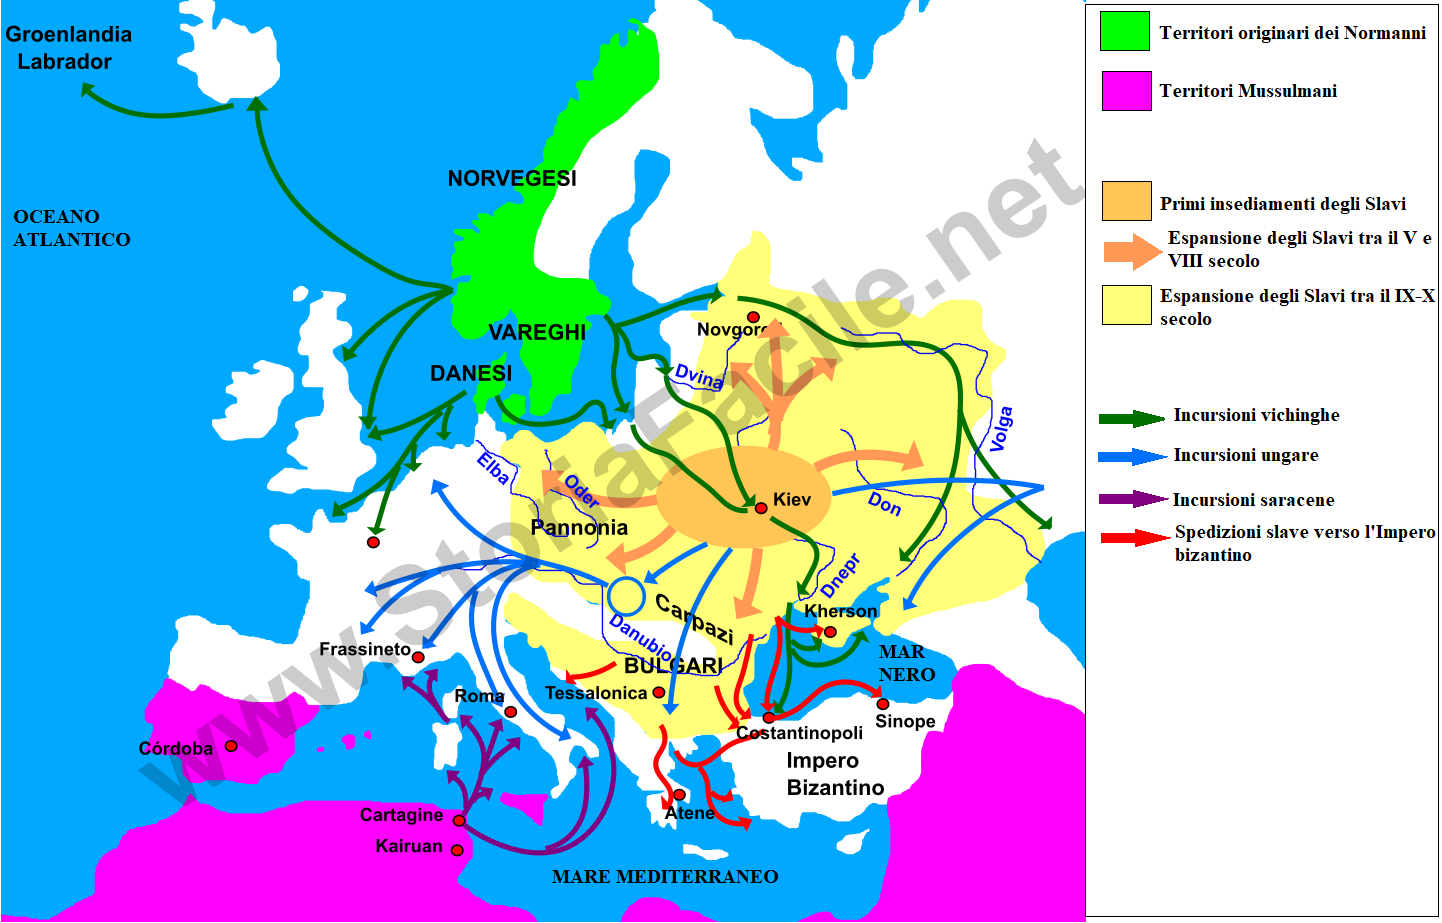 Invasioni in Europa tra il IX e il X secolo